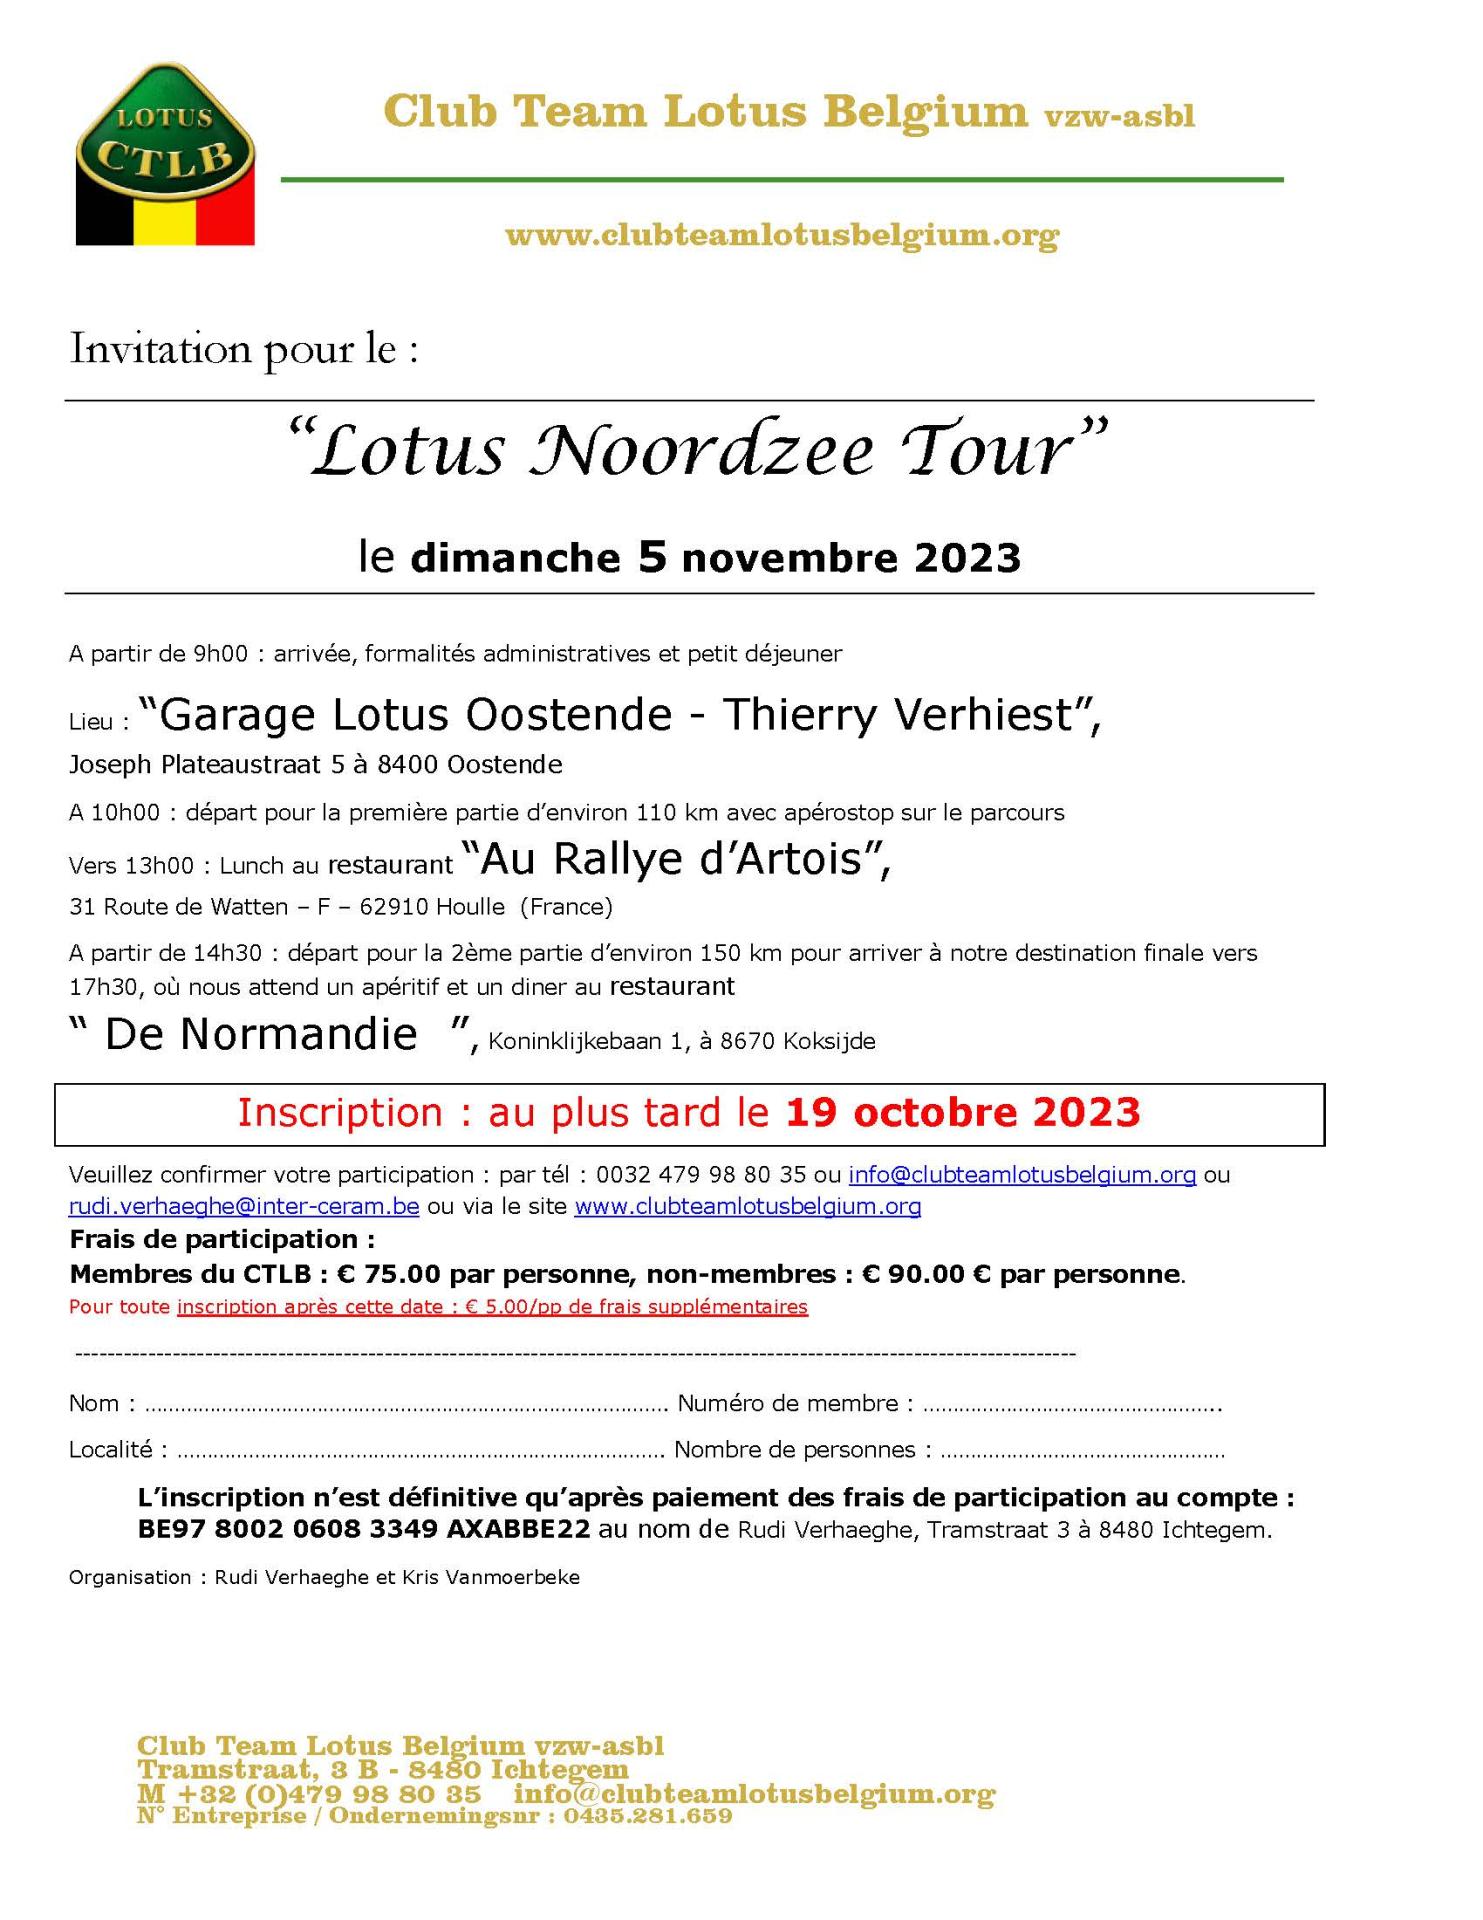 Invitation lotus noordzee tour 2023